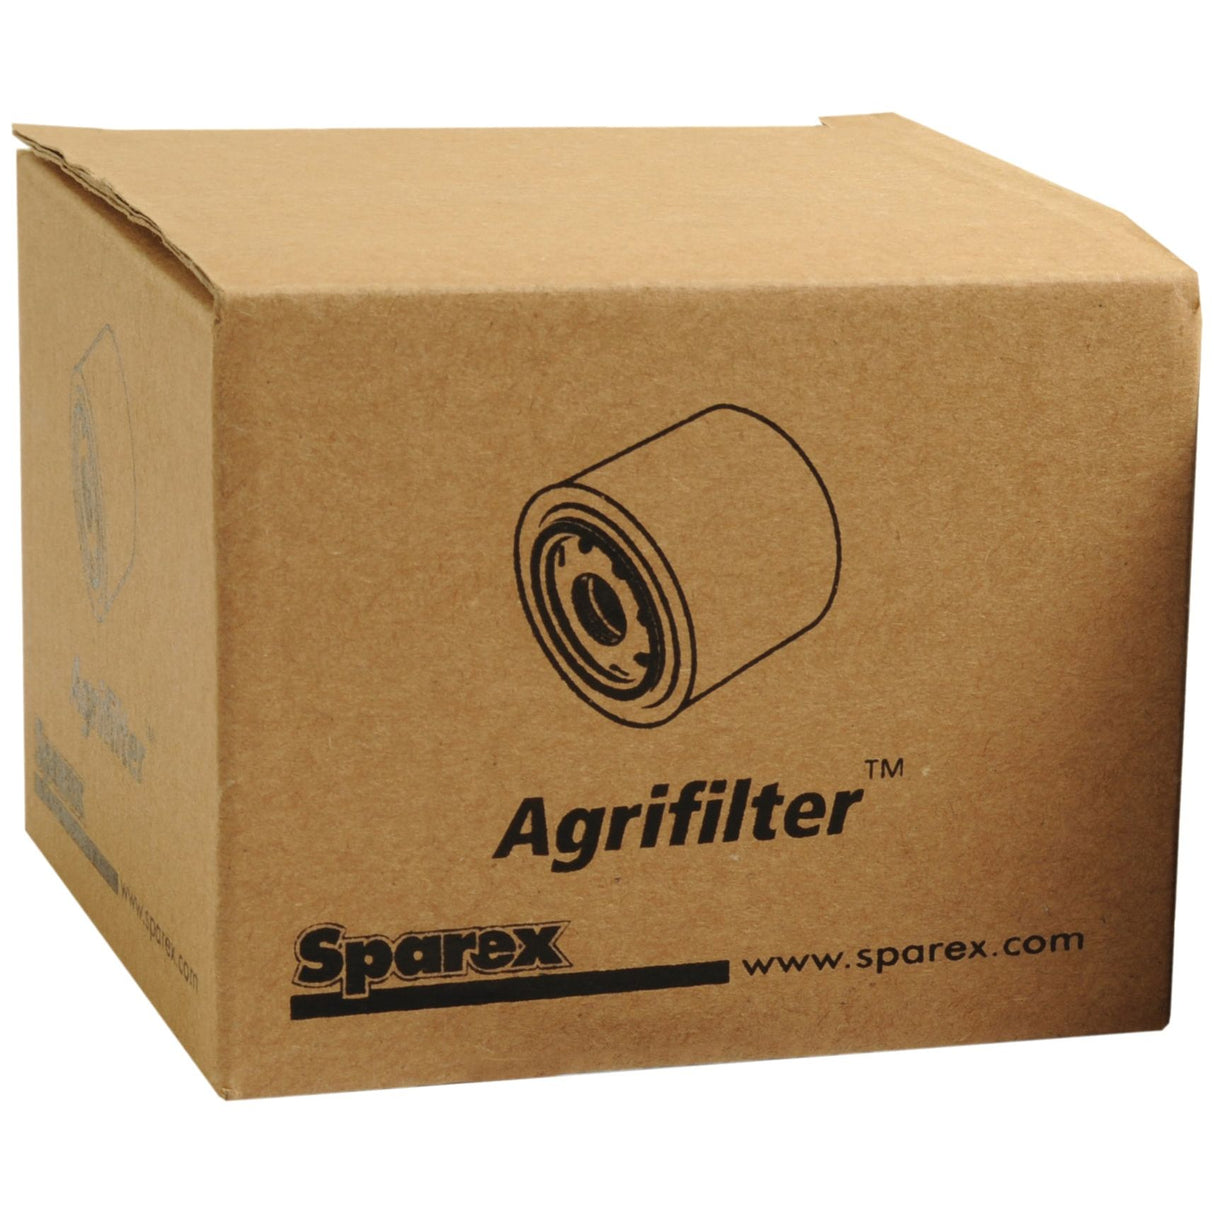 Fuel Filter - Element -
 - S.40543 - Farming Parts